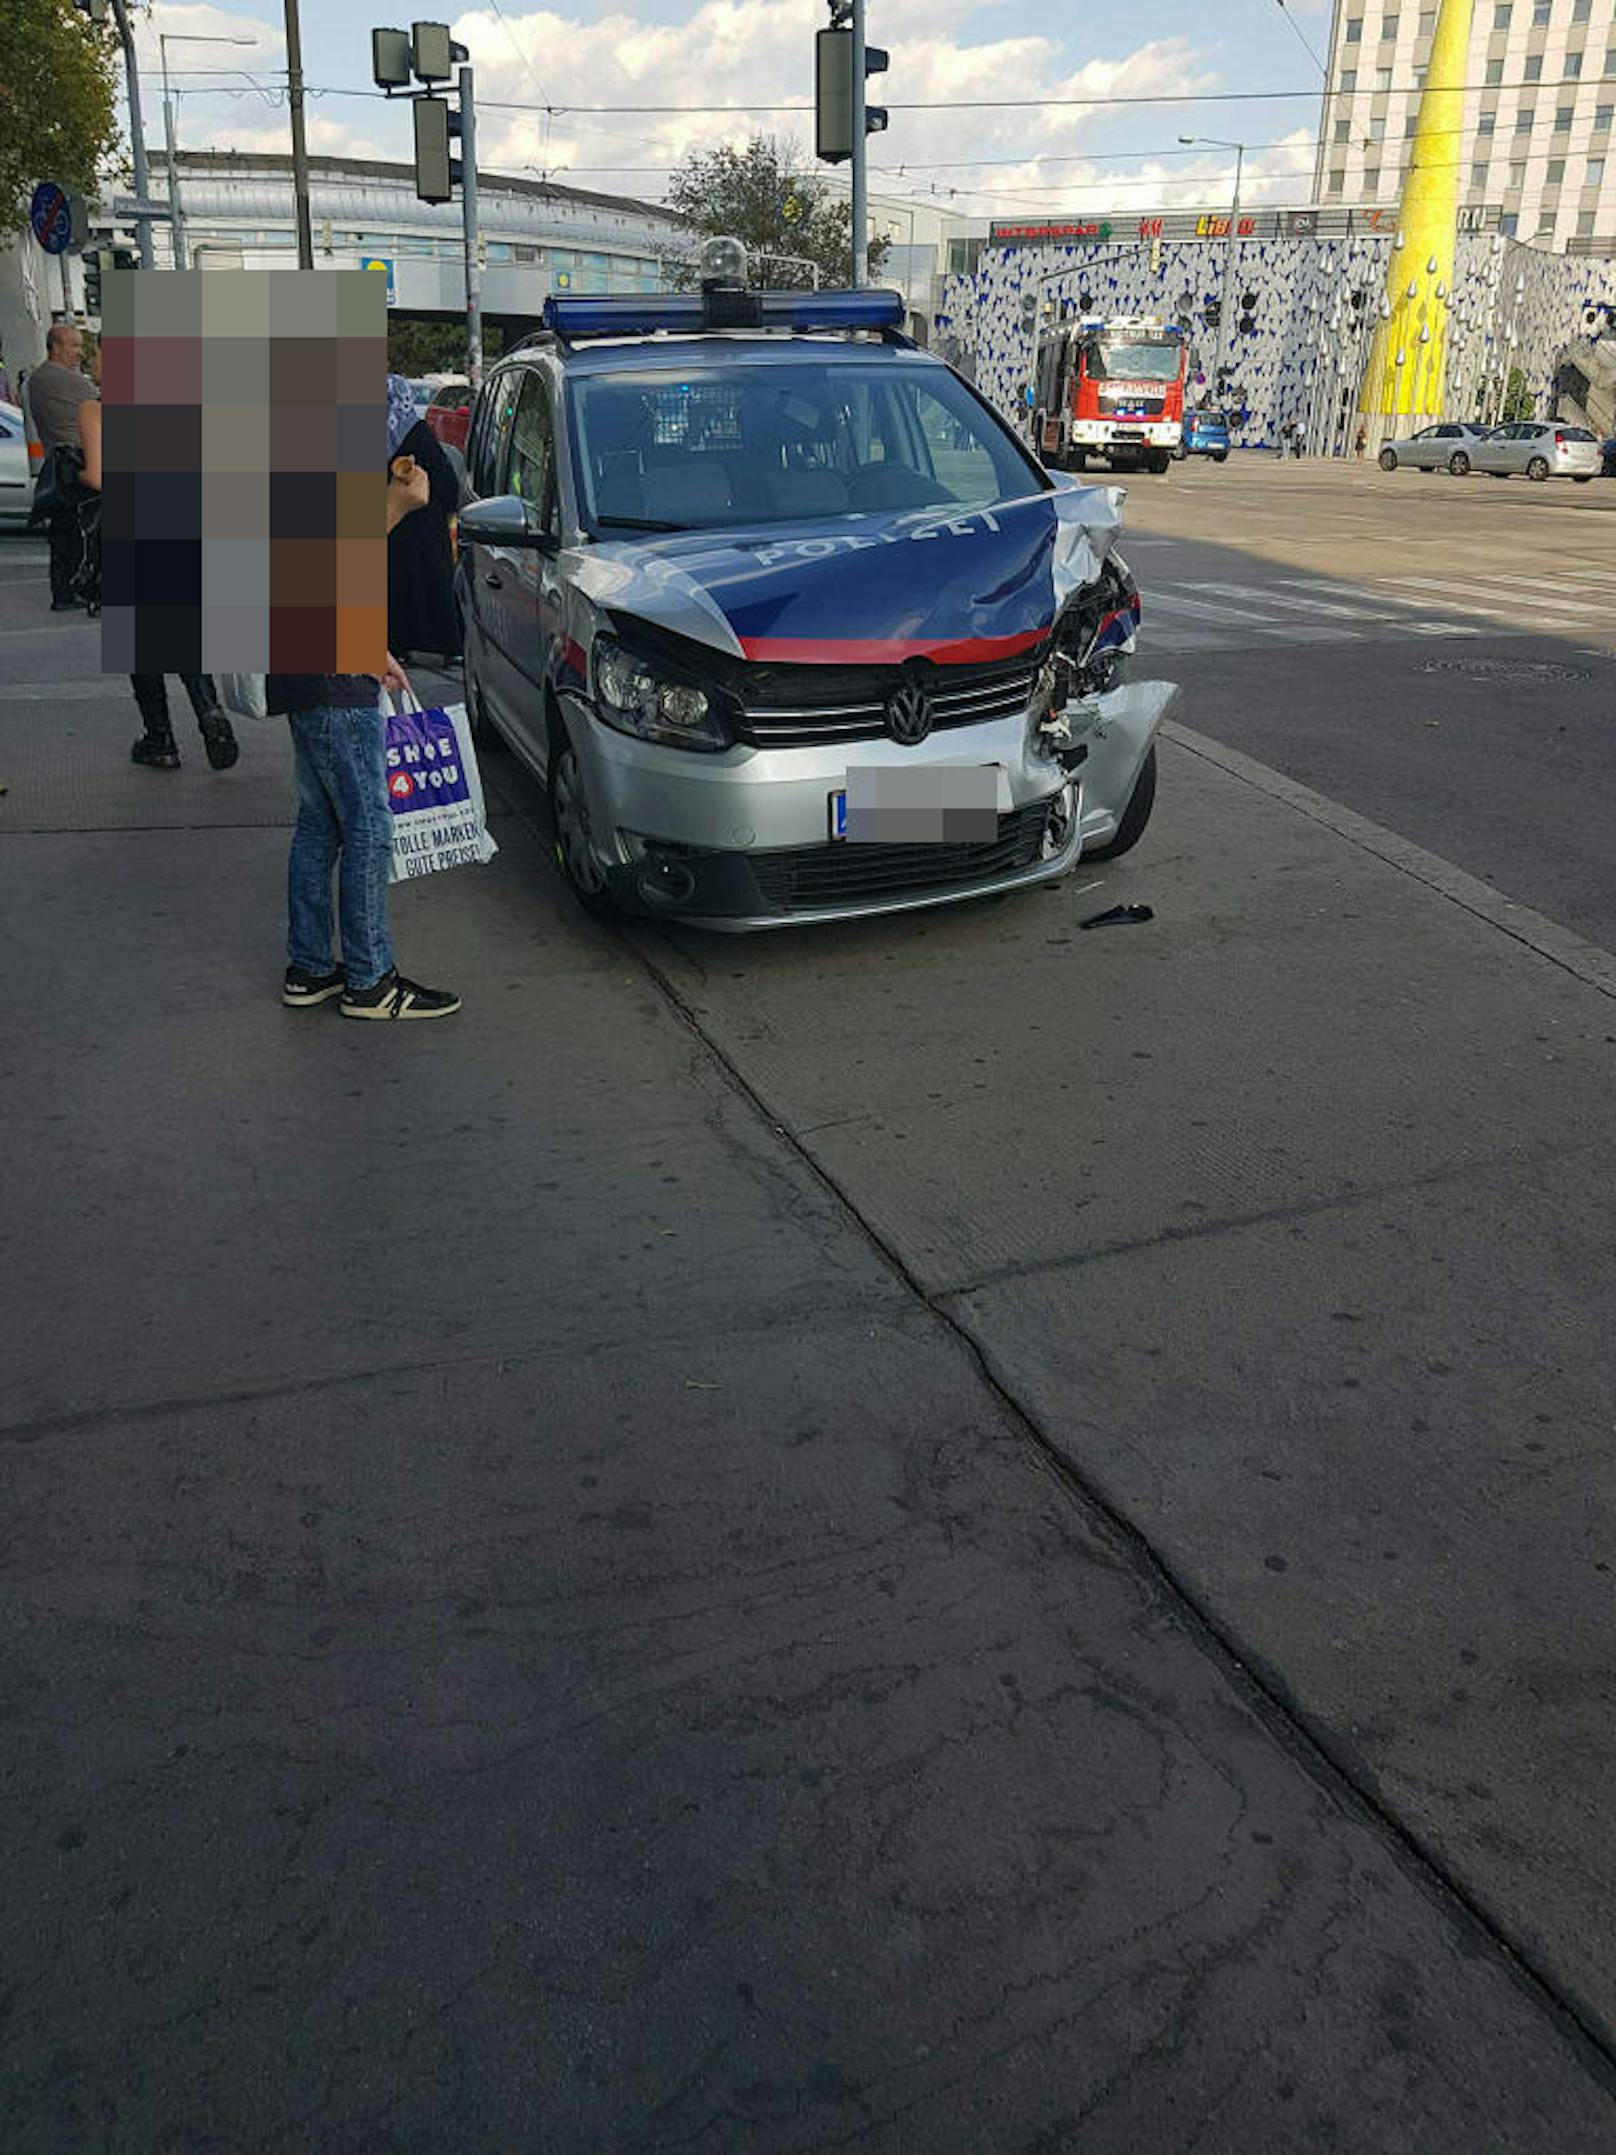 Dienstagnachmittag kam es auf der Wagramer Straße zu einem Verkehrsunfall zwischen einem Polizeiauto und einem privaten Pkw.